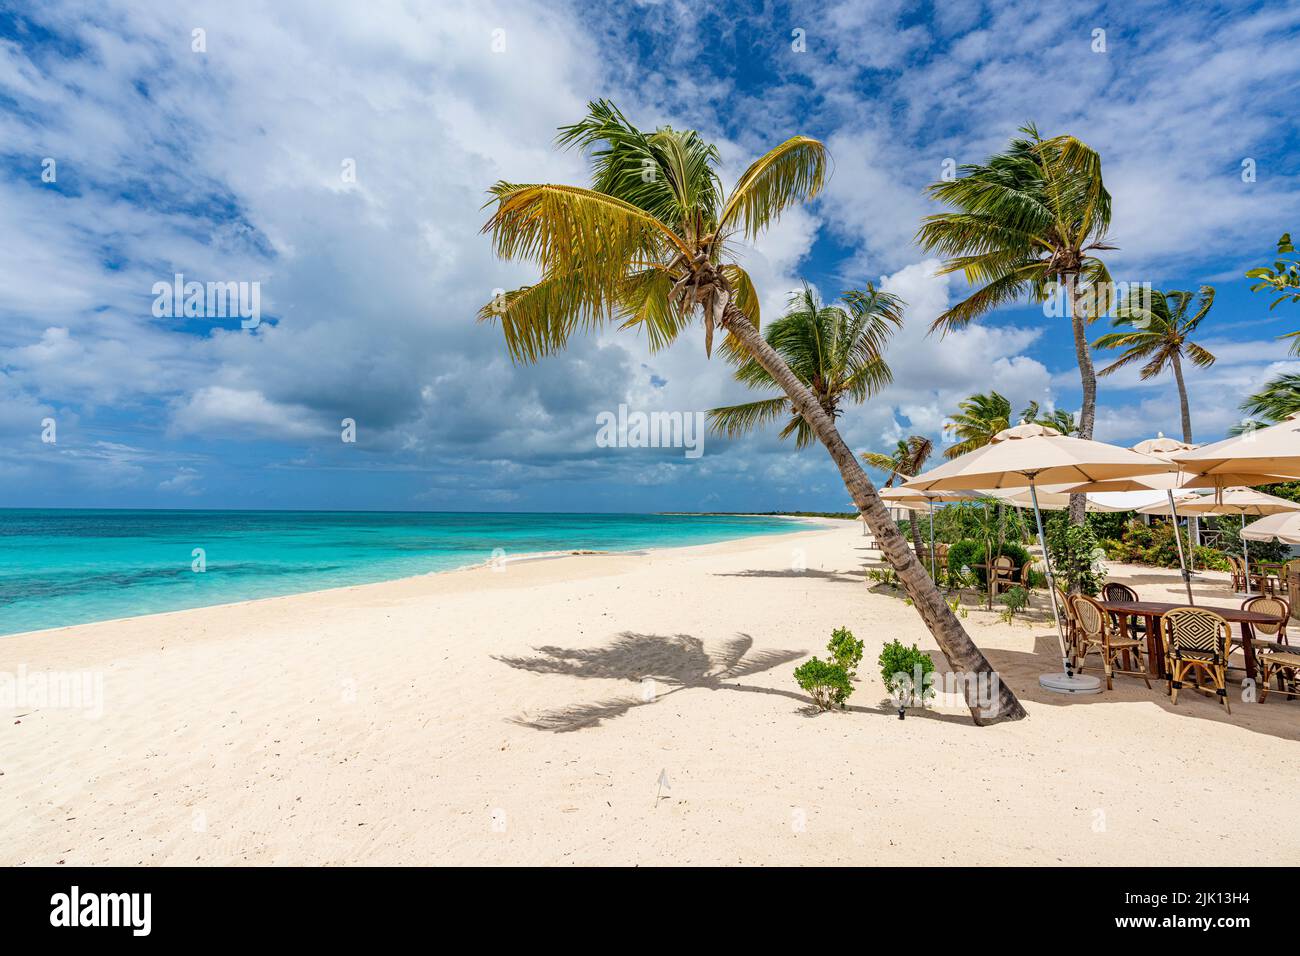 Restaurant en plein air d'un complexe de luxe sur une plage bordée de palmiers, Barbuda, Antigua-et-Barbuda, Antilles, Caraïbes, Amérique centrale Banque D'Images